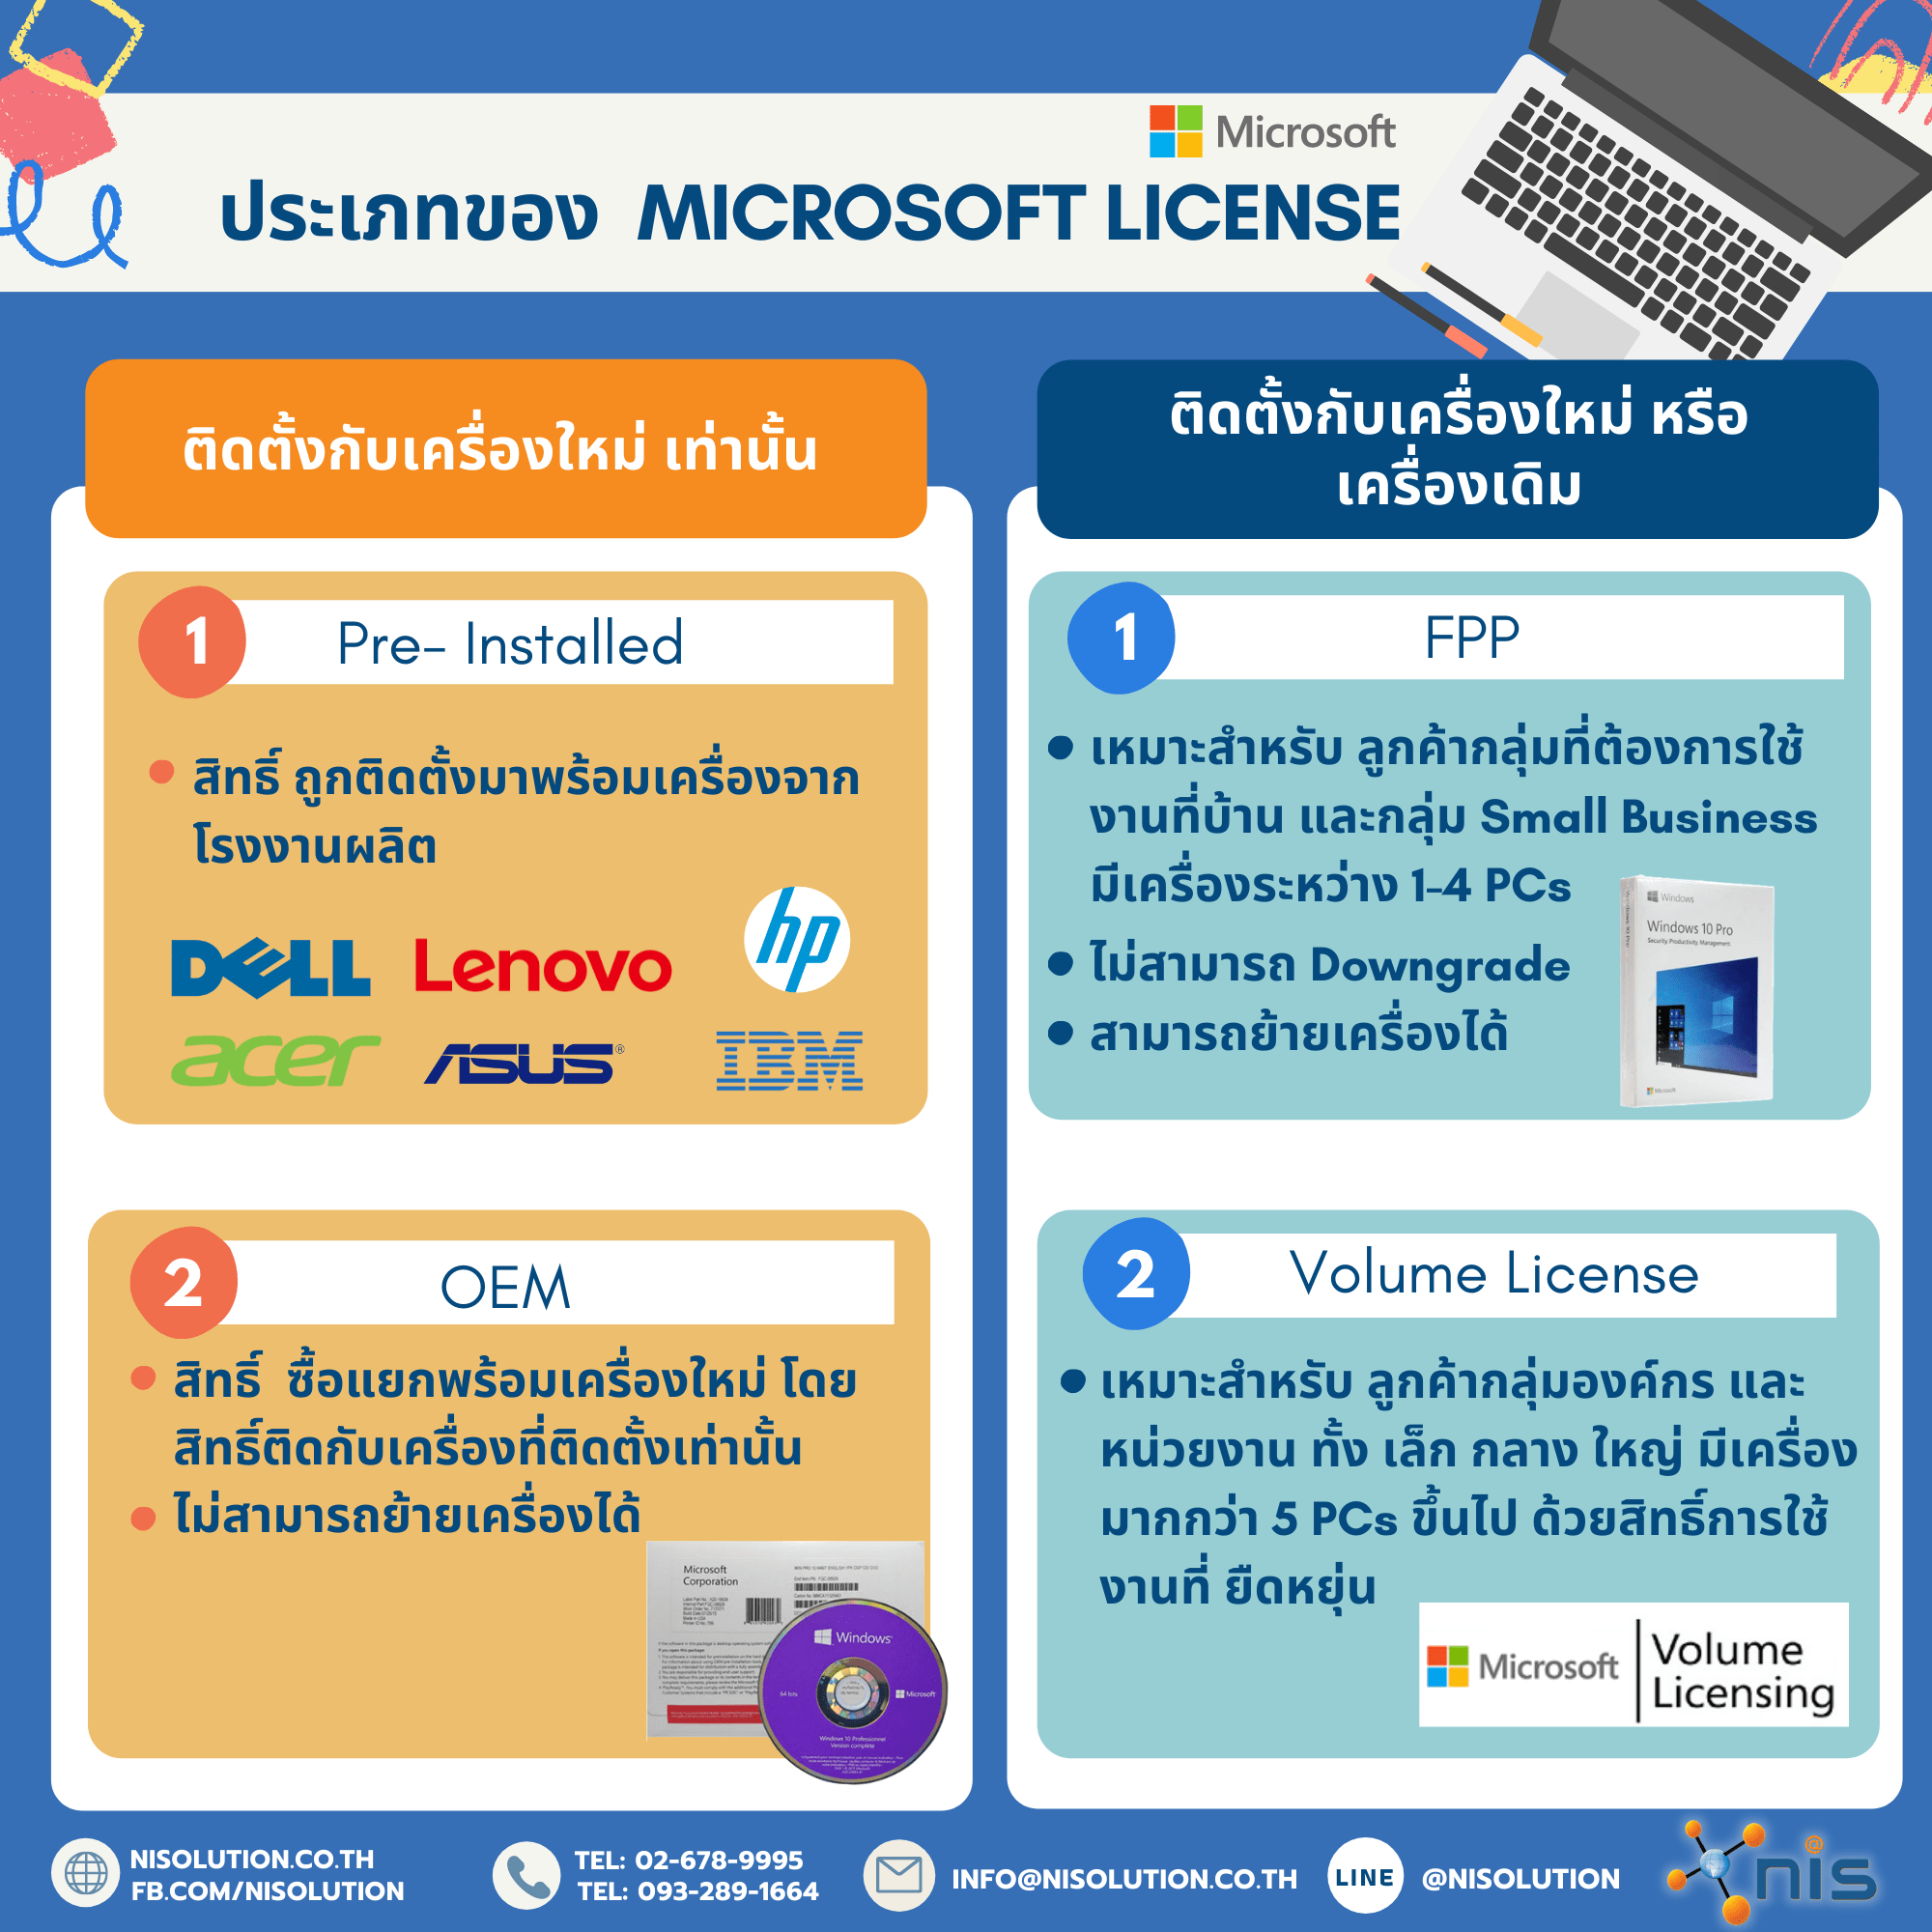 ประเภทของ Microsoft License